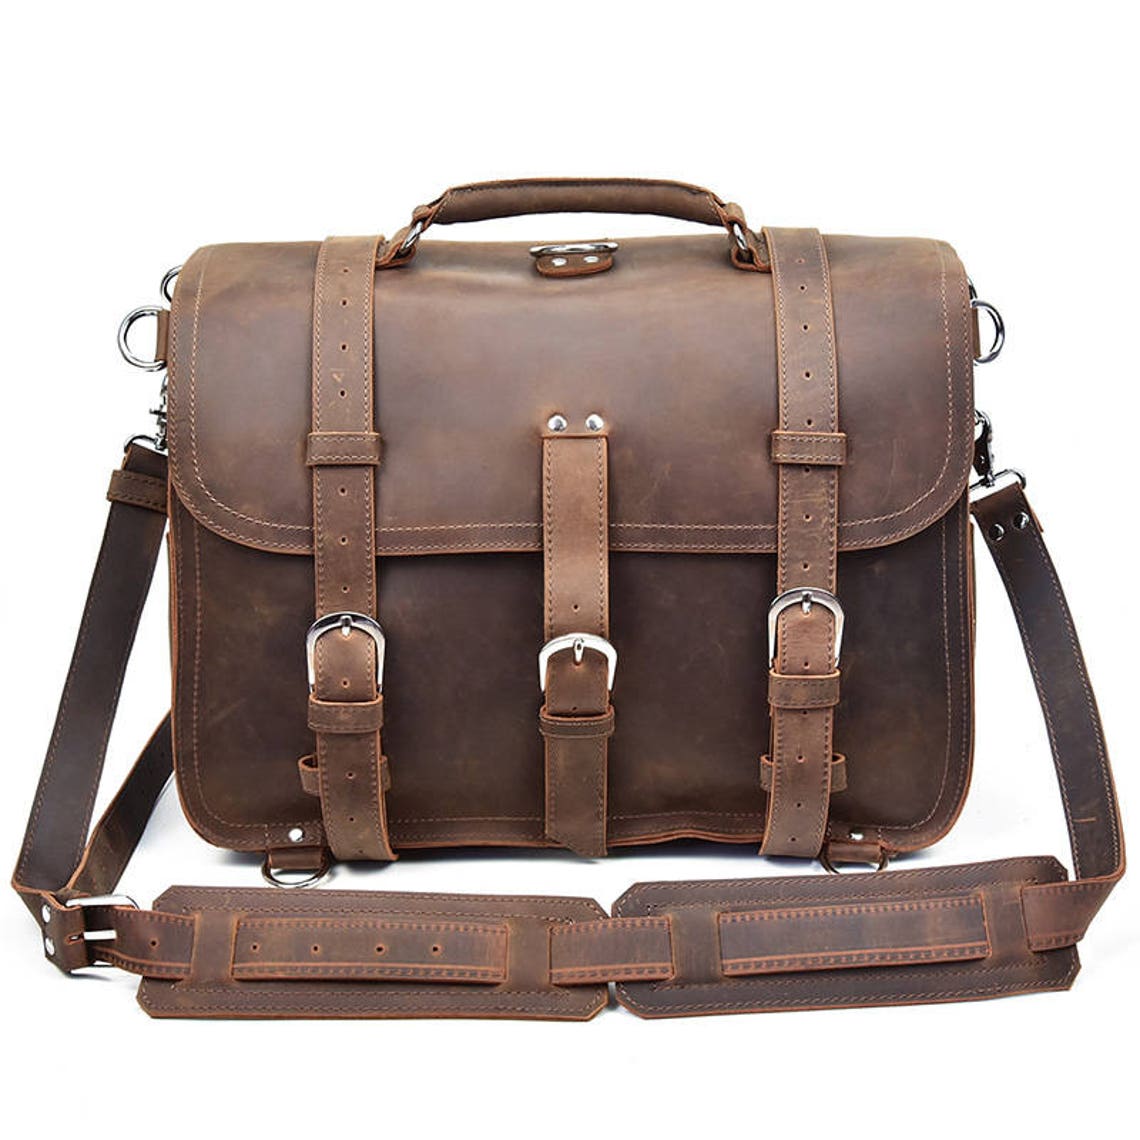 Leather Laptop Bag Messenger BackpackBrown leather tablet | Etsy